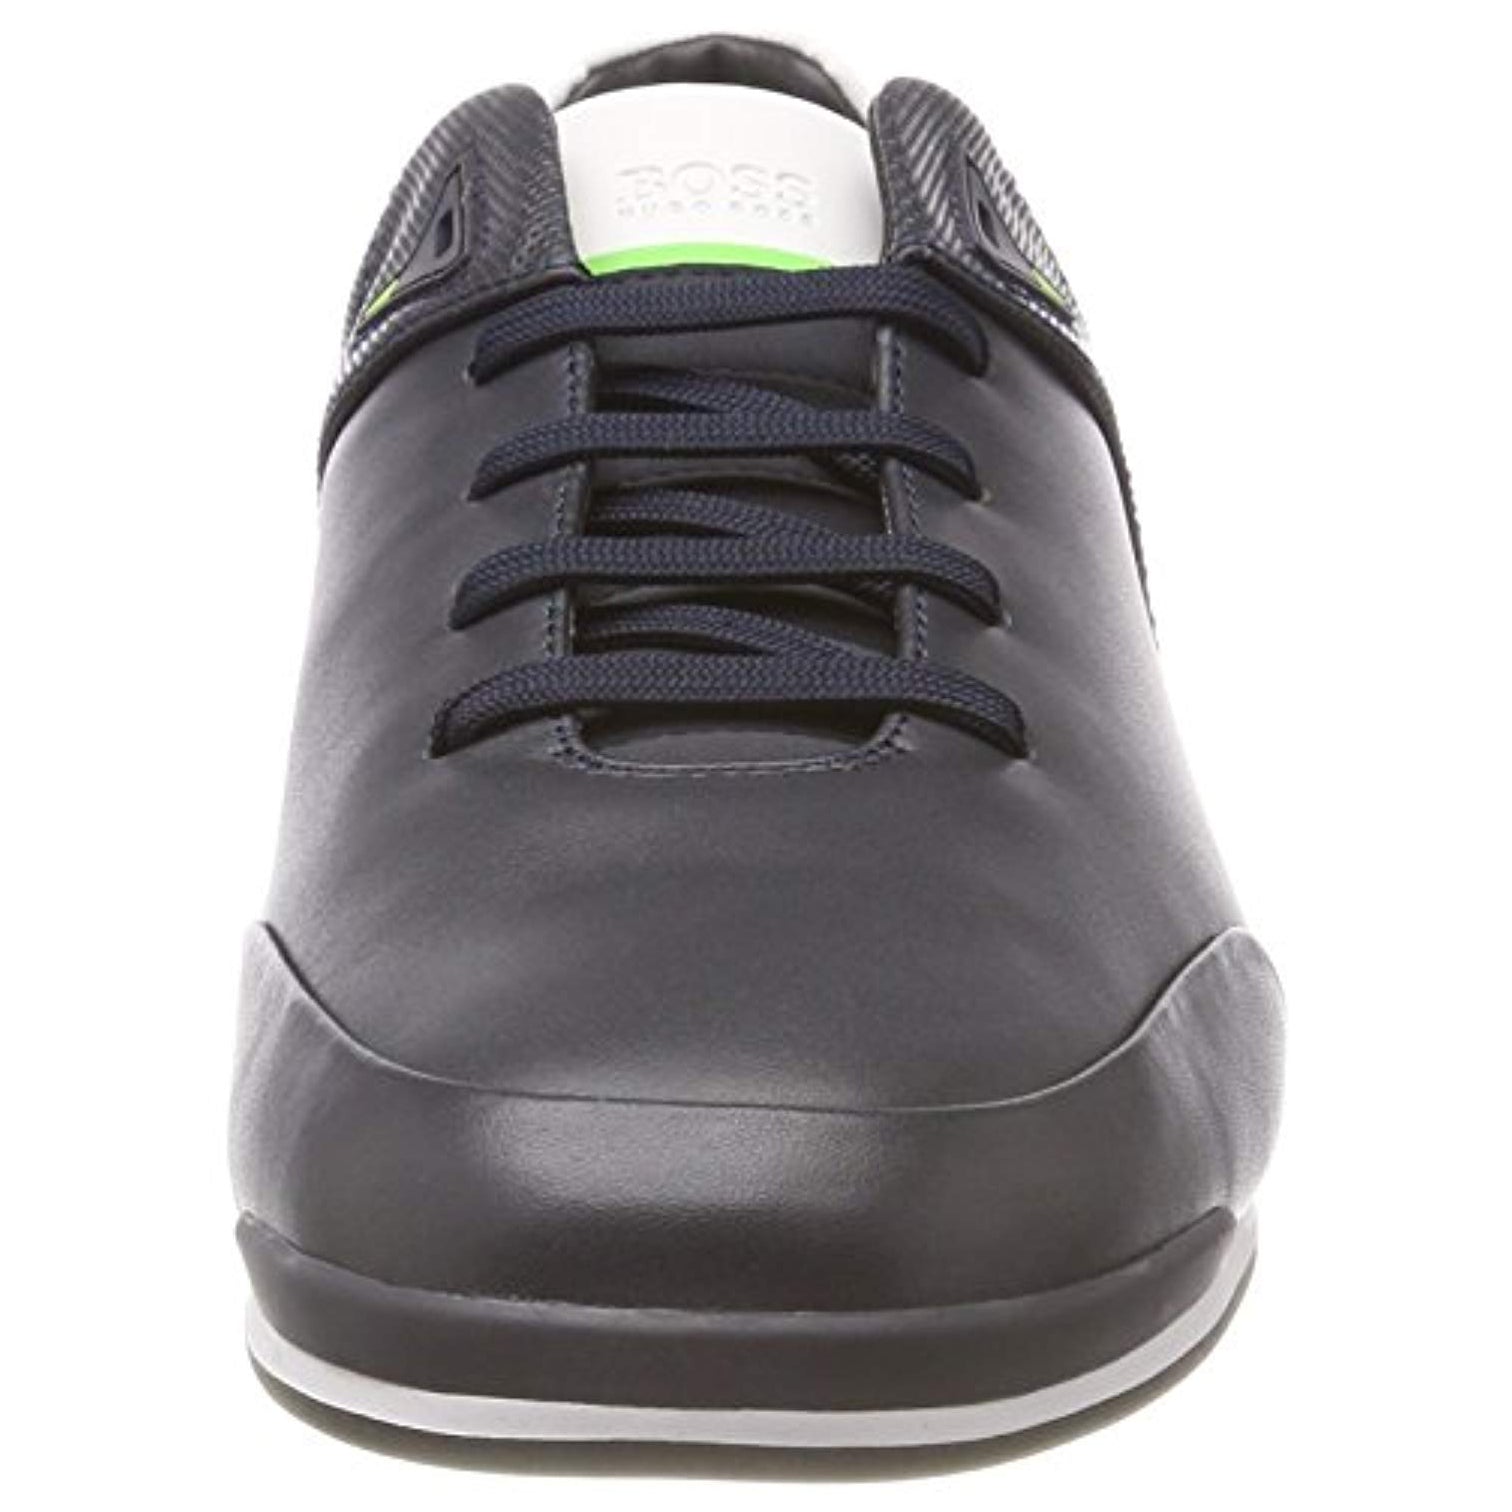 Hugo Boss Black & Green Velcro Sneaker J09201 – Laced Shoe Inc